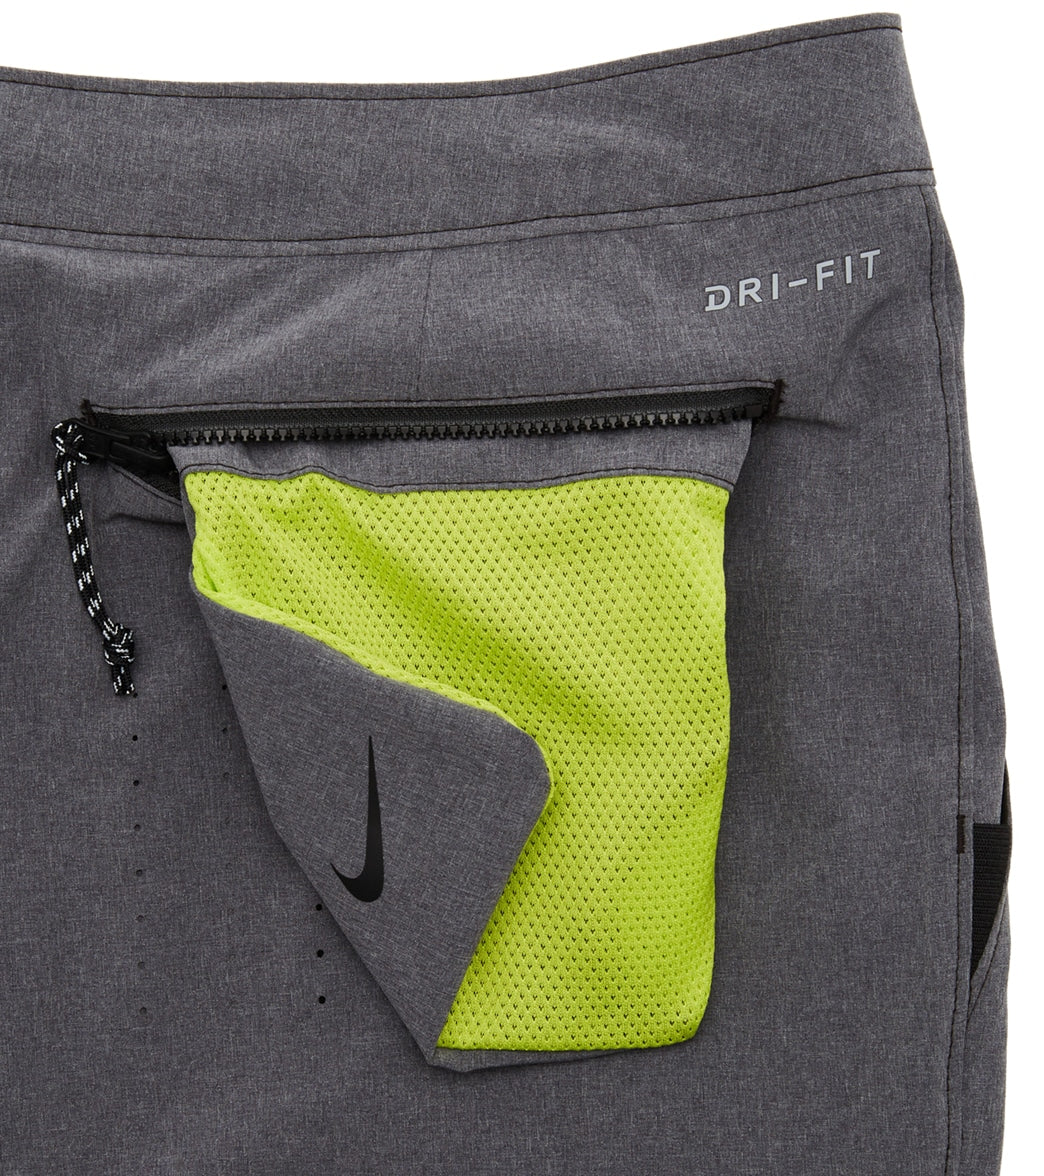 Nike Mens 20 Explore (Better) Merge Hybrid Shorts